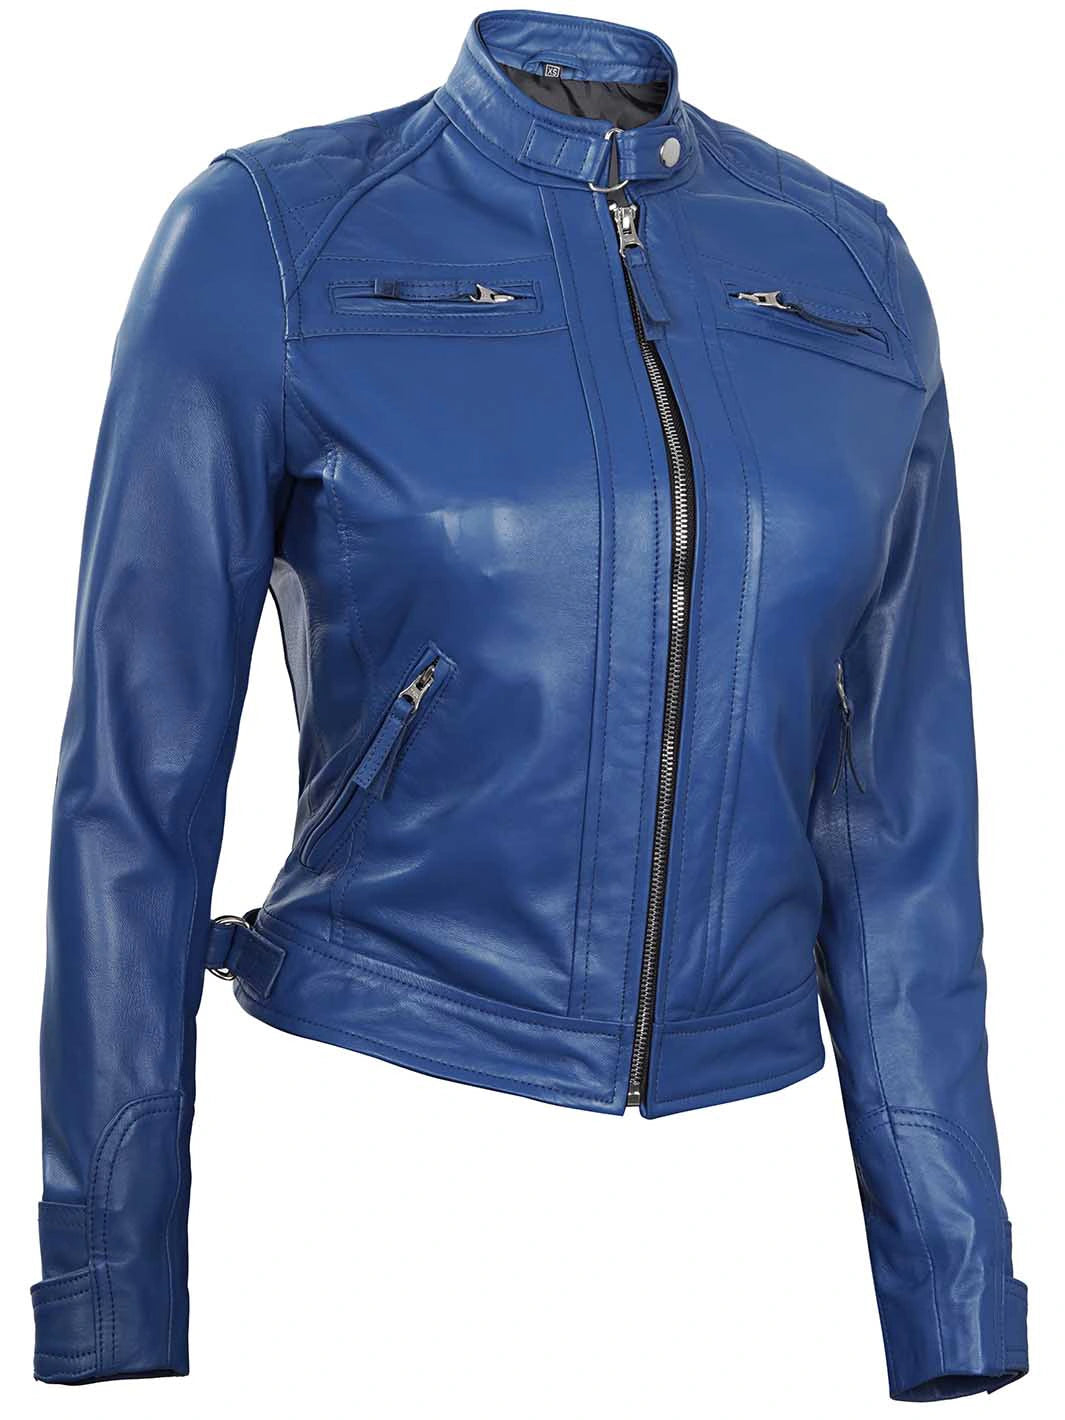 Blue cafe racer leather jacket